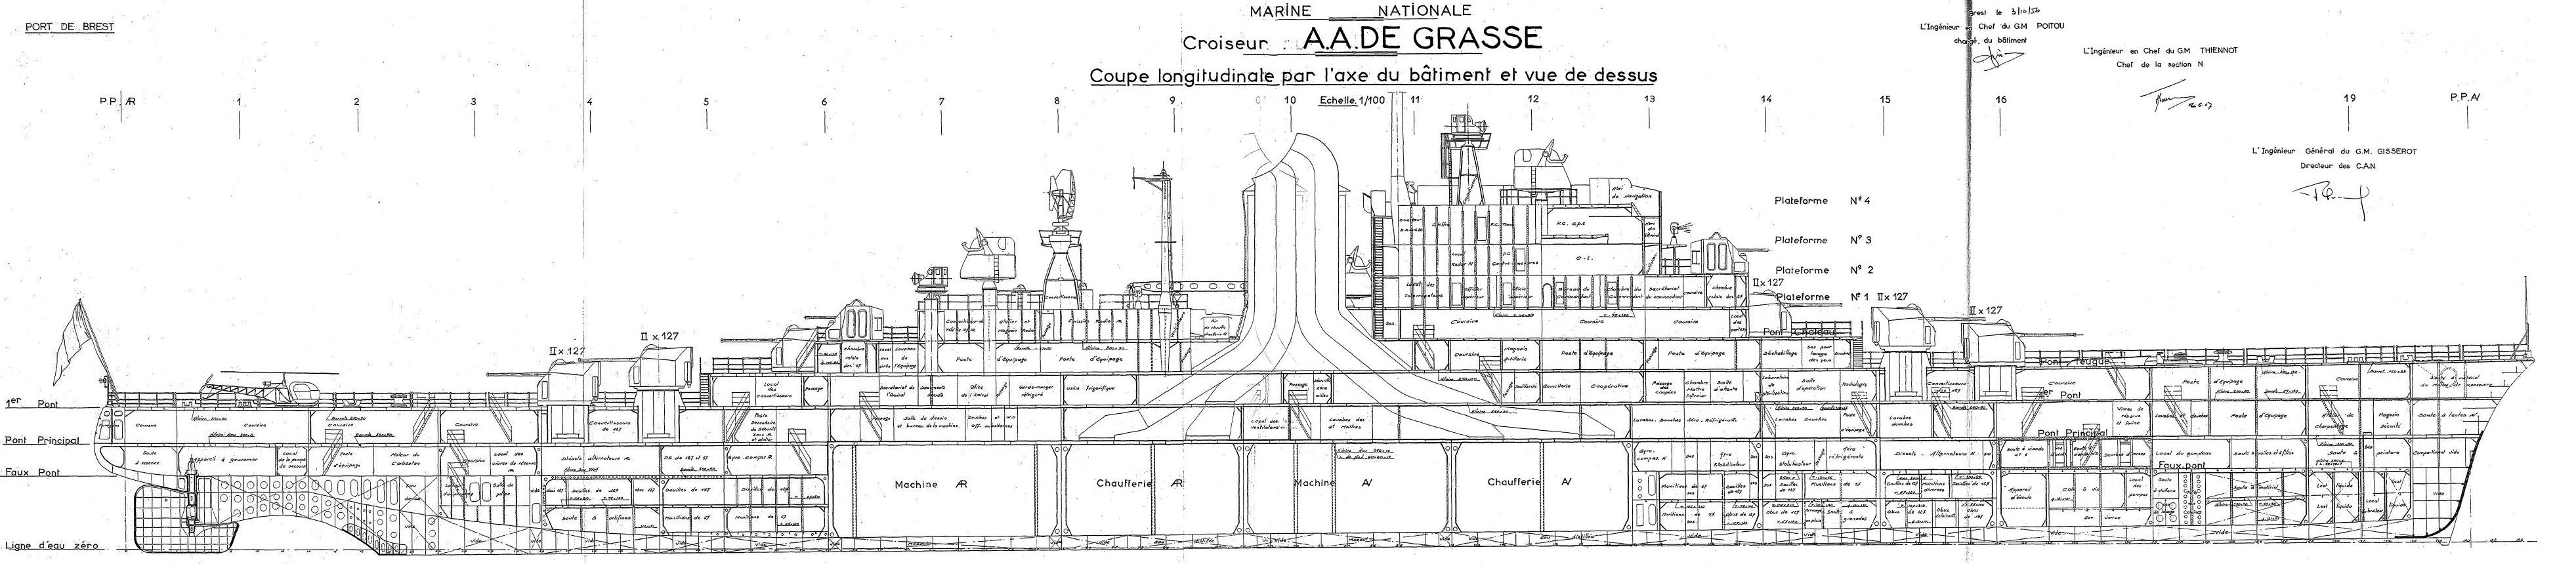 Le croiseur De Grasse dans son état d'origine - Page 3 110201025637117887567563